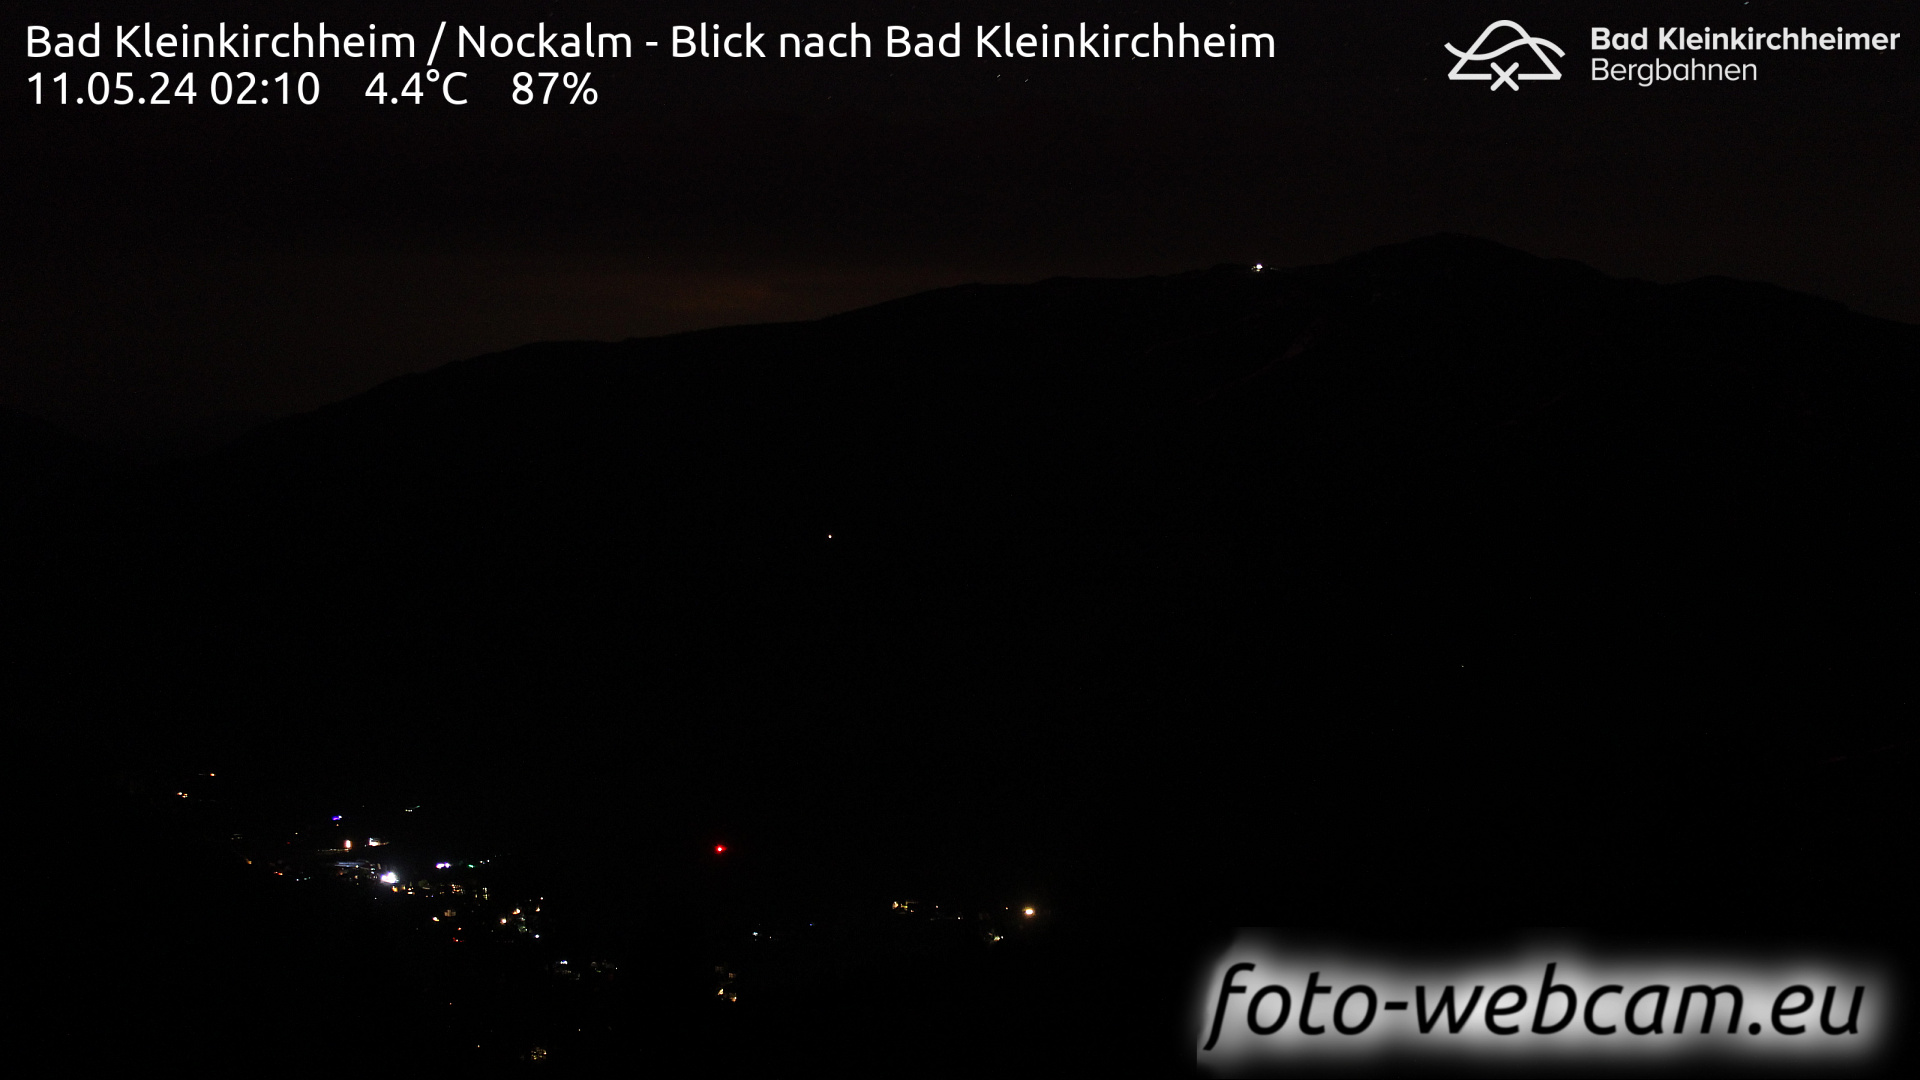 Bad Kleinkirchheim Lun. 02:17